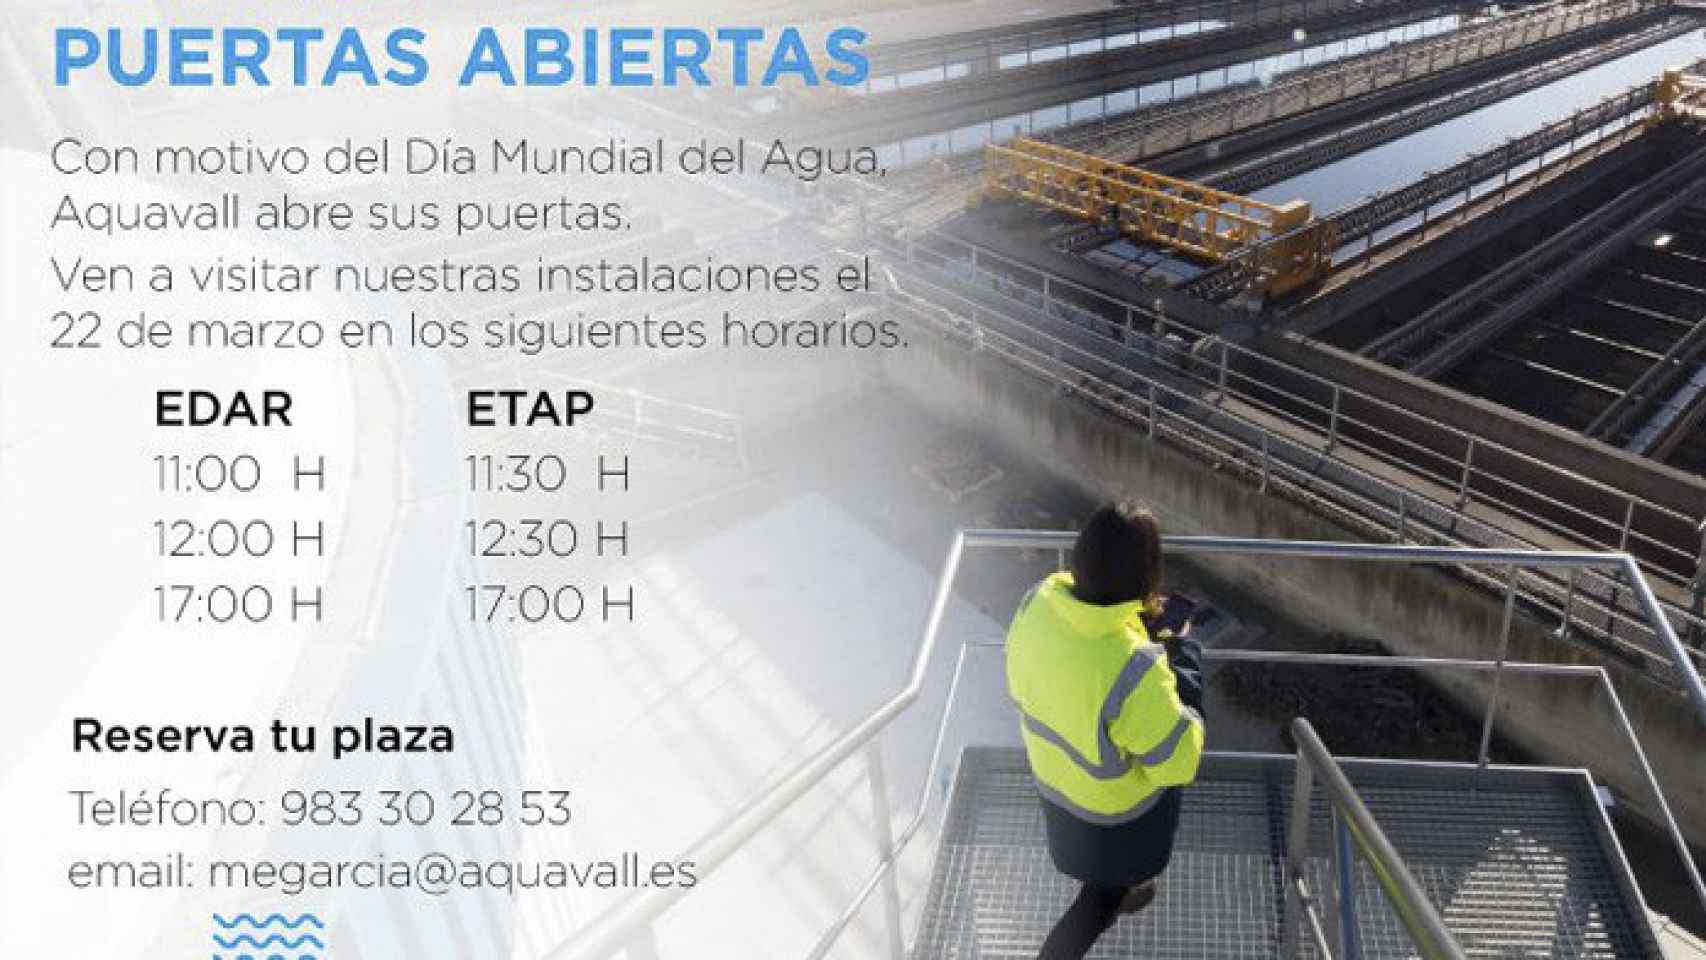 Valladolid-aquavall-jornada-puertas-abiertas